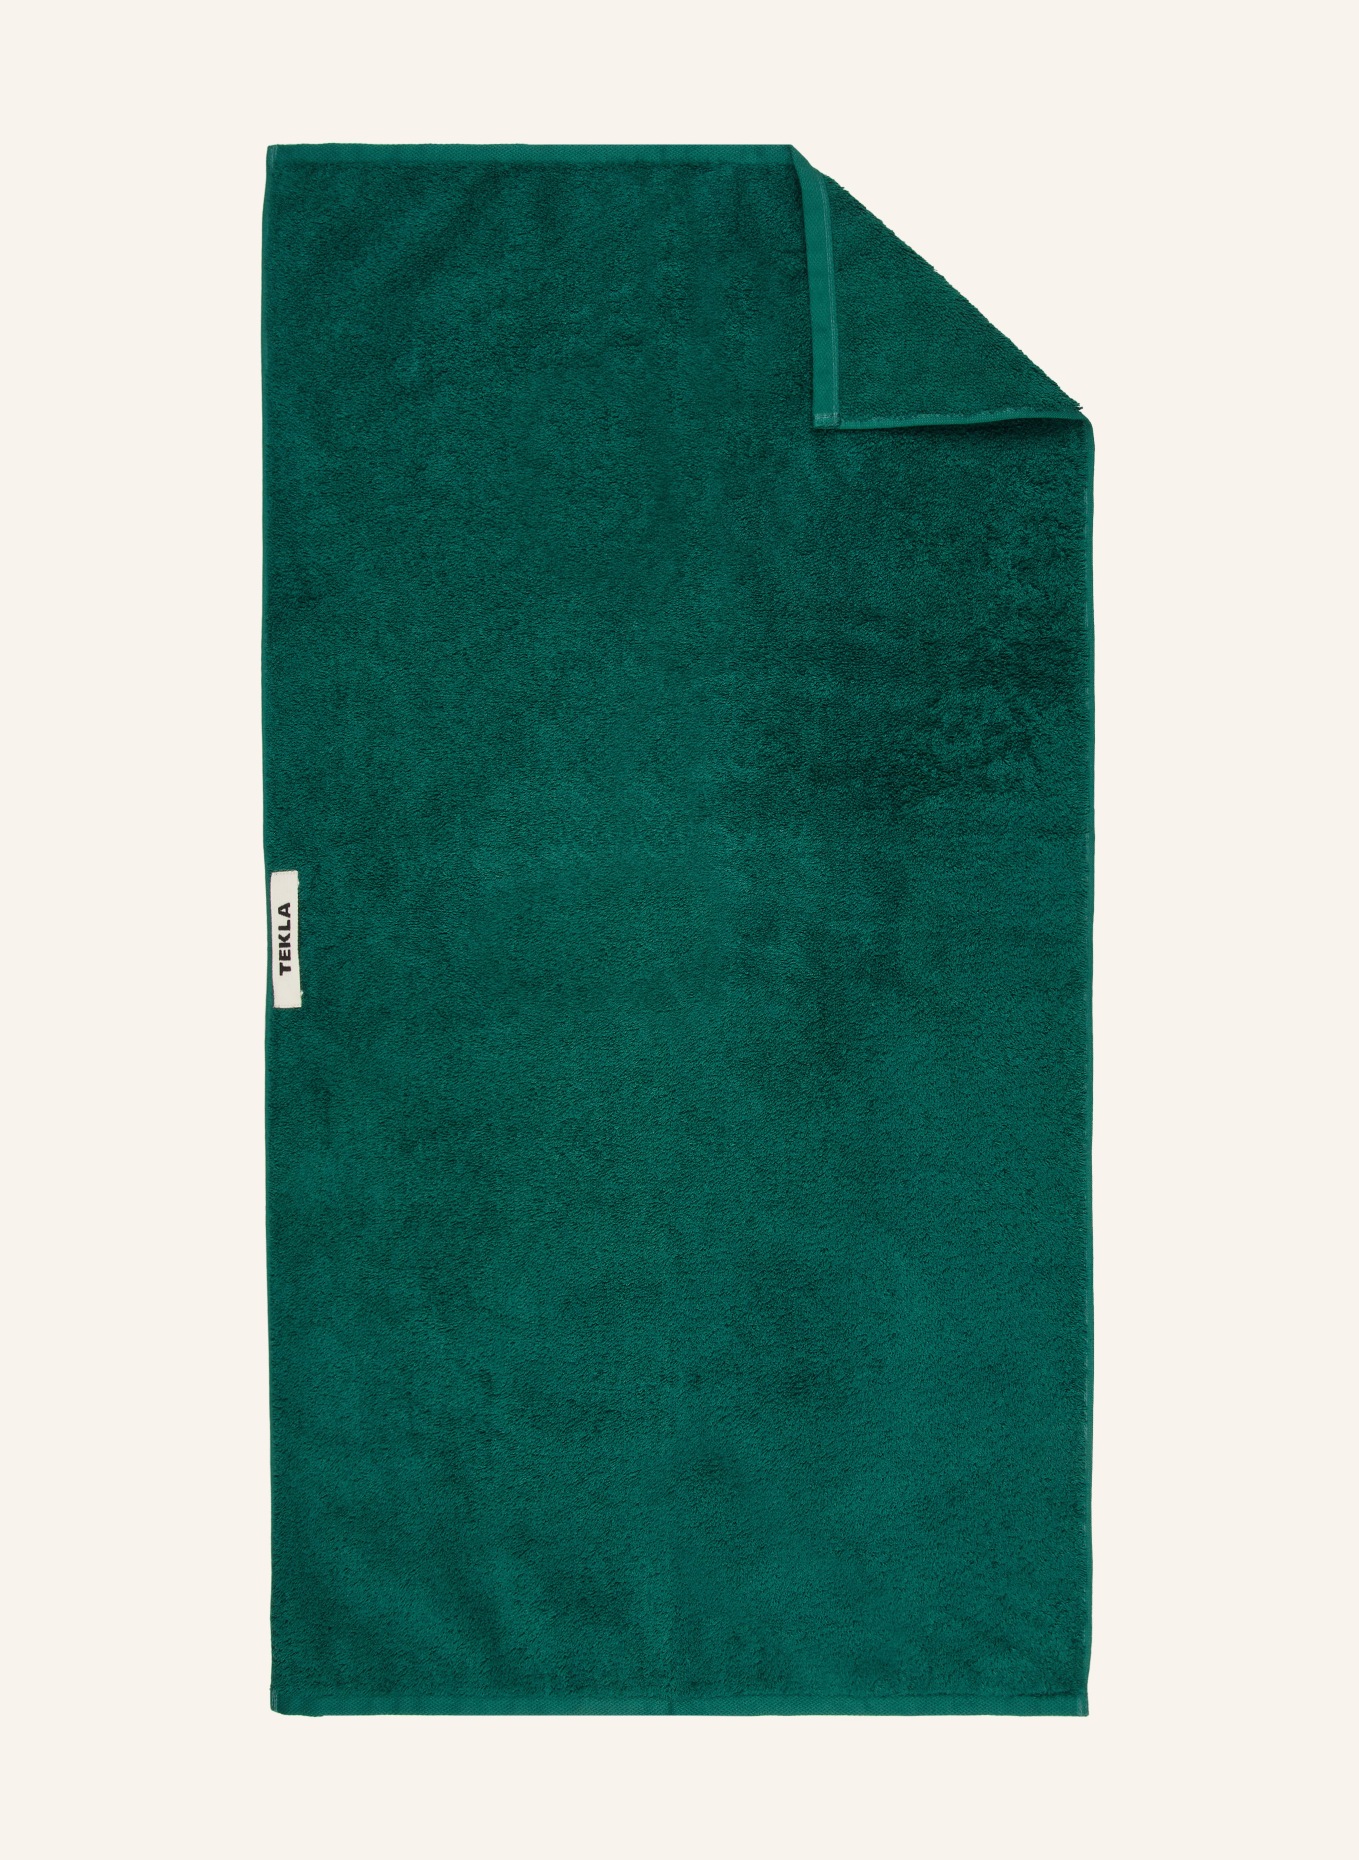 TEKLA Handtuch (Bild 1)